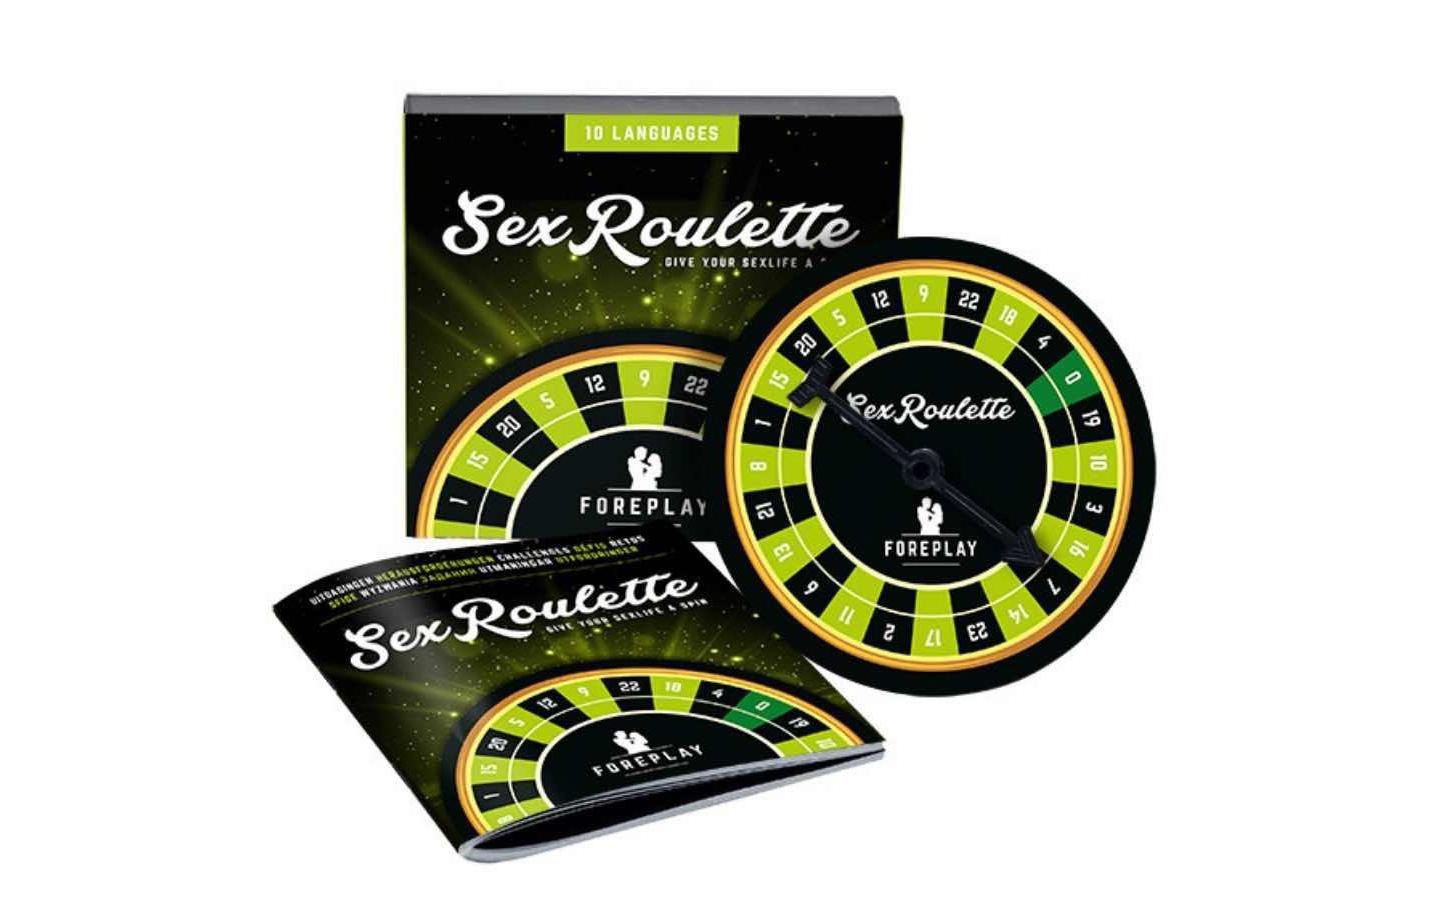 tease & please Erotik-Toy-Set »Sex Roulette Forepla«